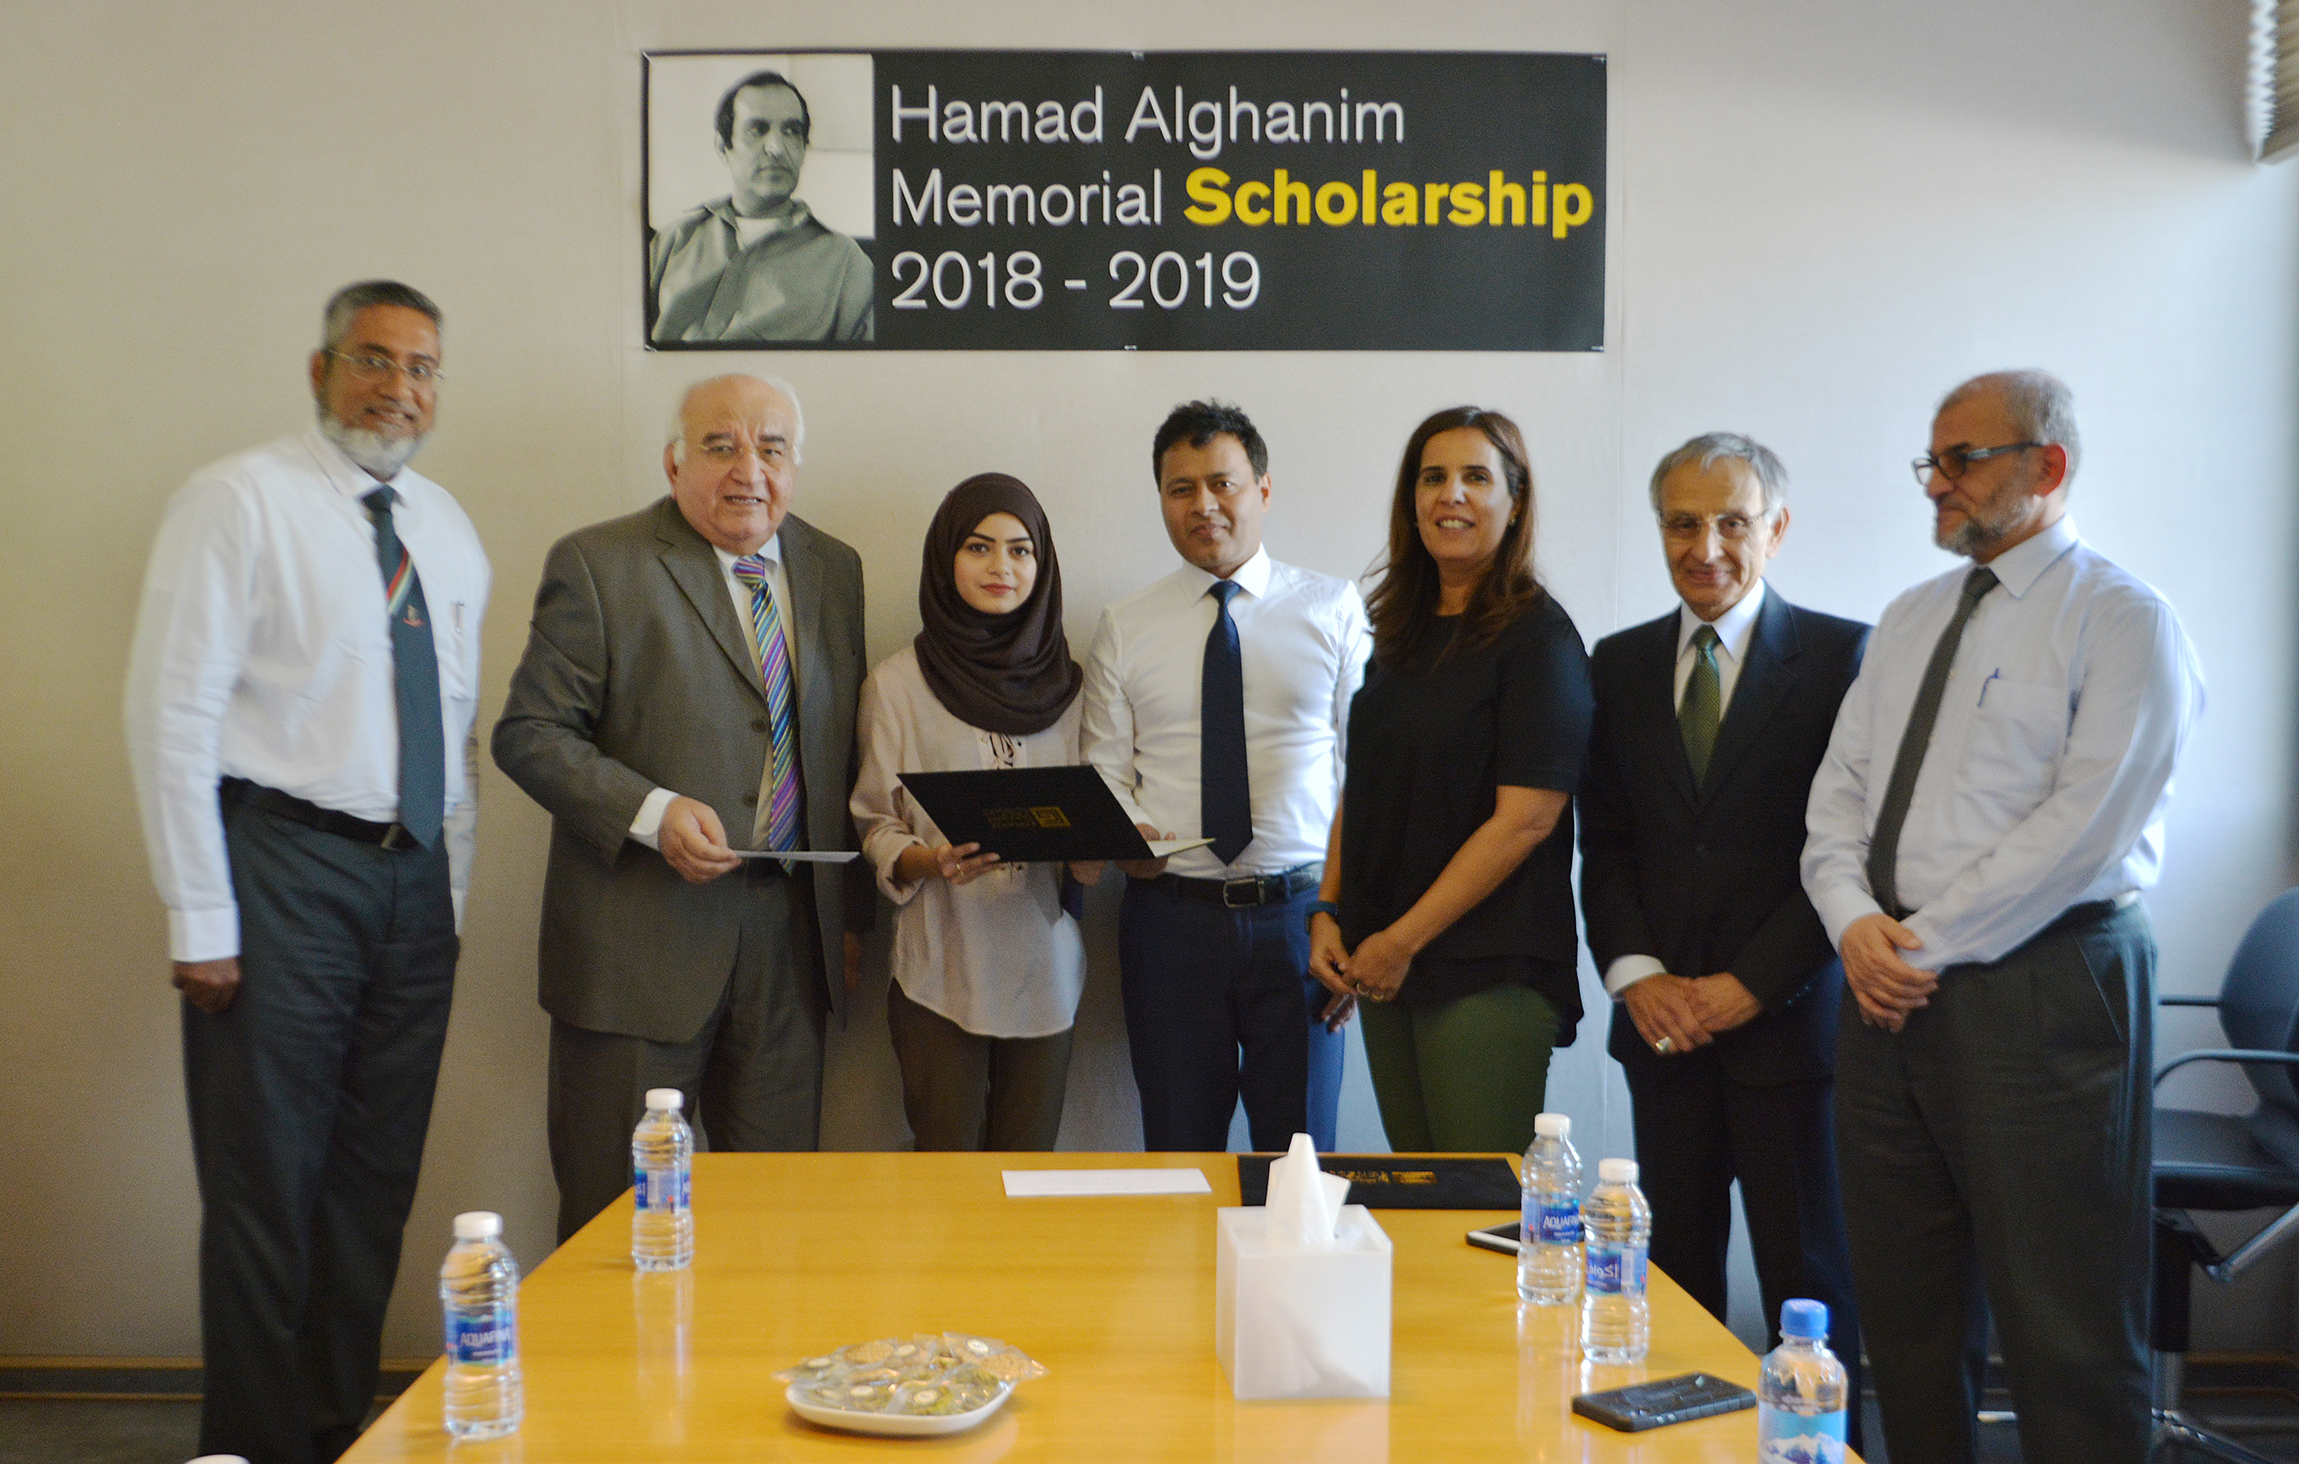 Hamad Alghanim Scholarship 2018-19 Award Winners Announced